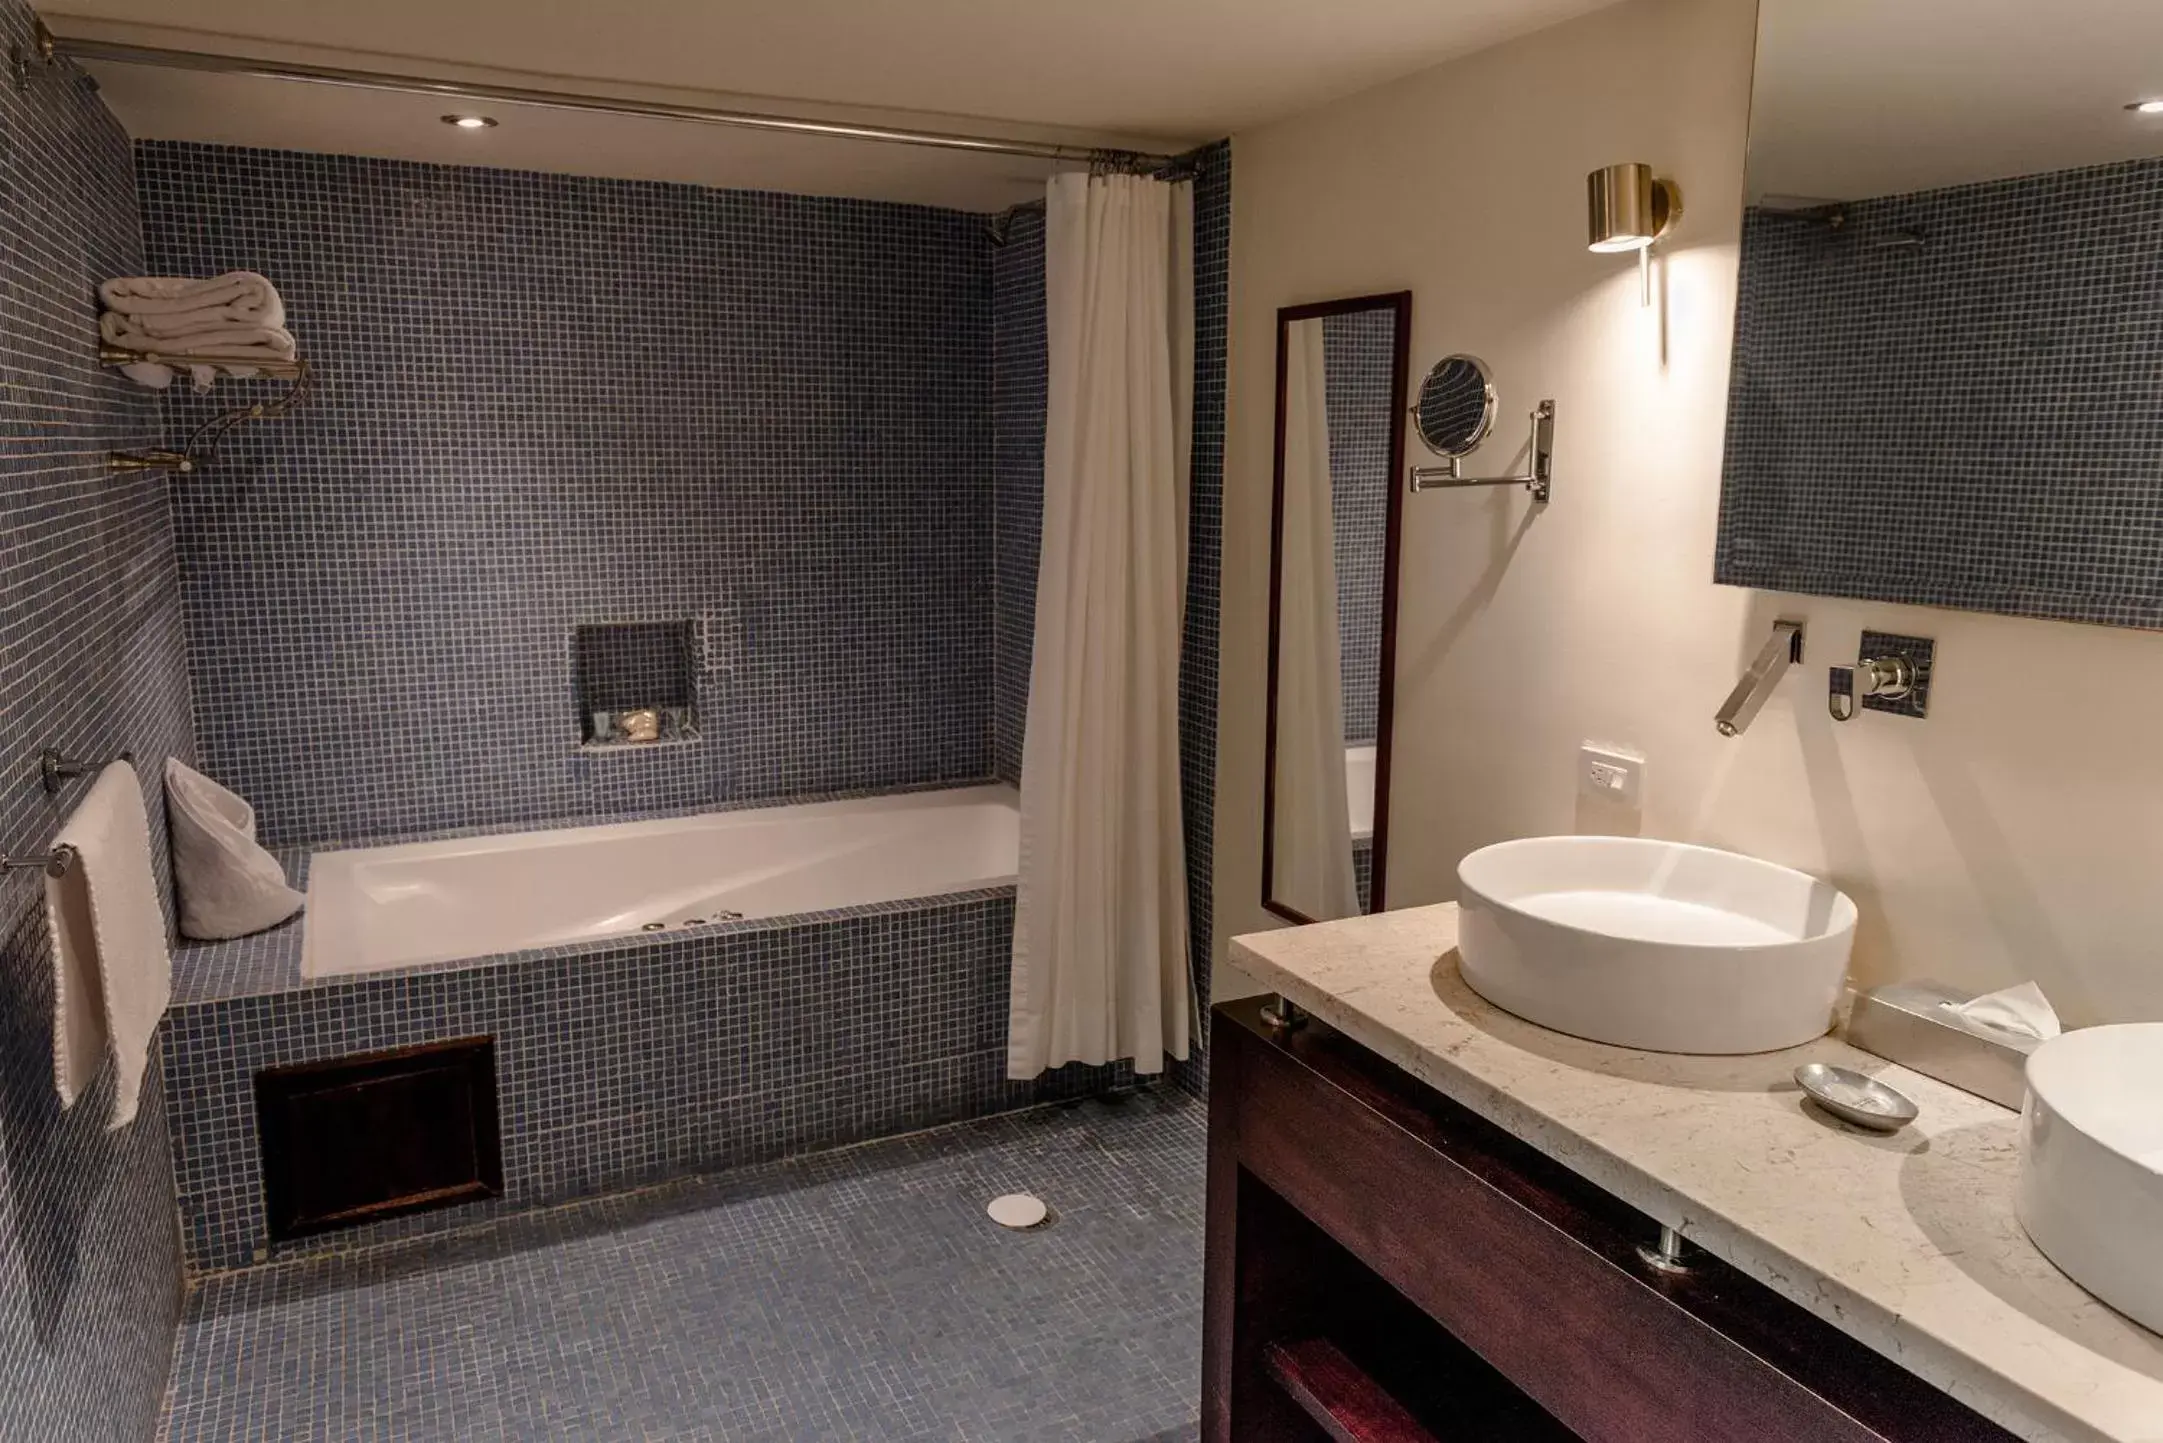 Bedroom, Bathroom in Hotel La Morada